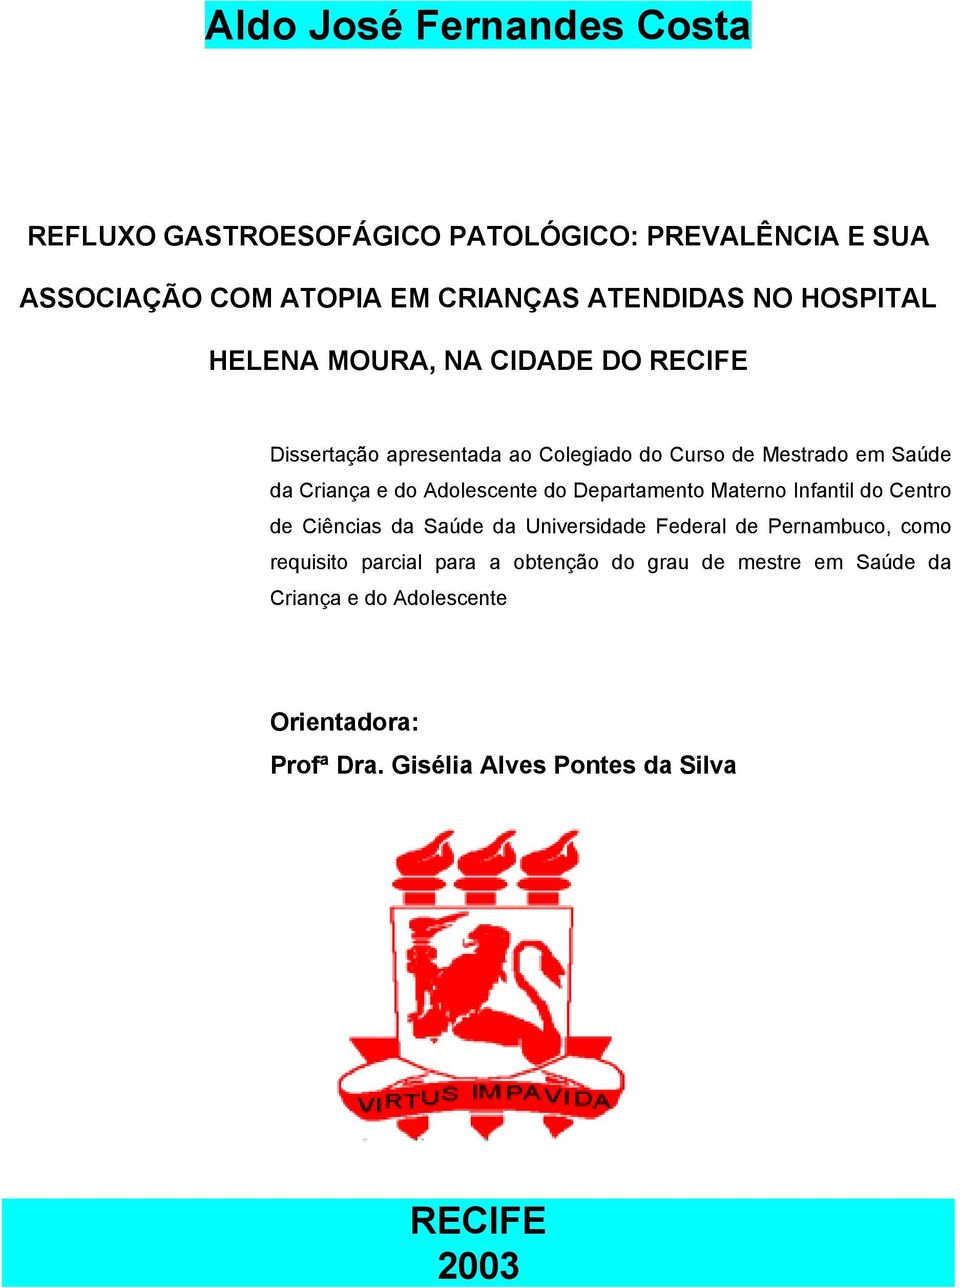 Adolescente do Departamento Materno Infantil do Centro de Ciências da Saúde da Universidade Federal de Pernambuco, como requisito